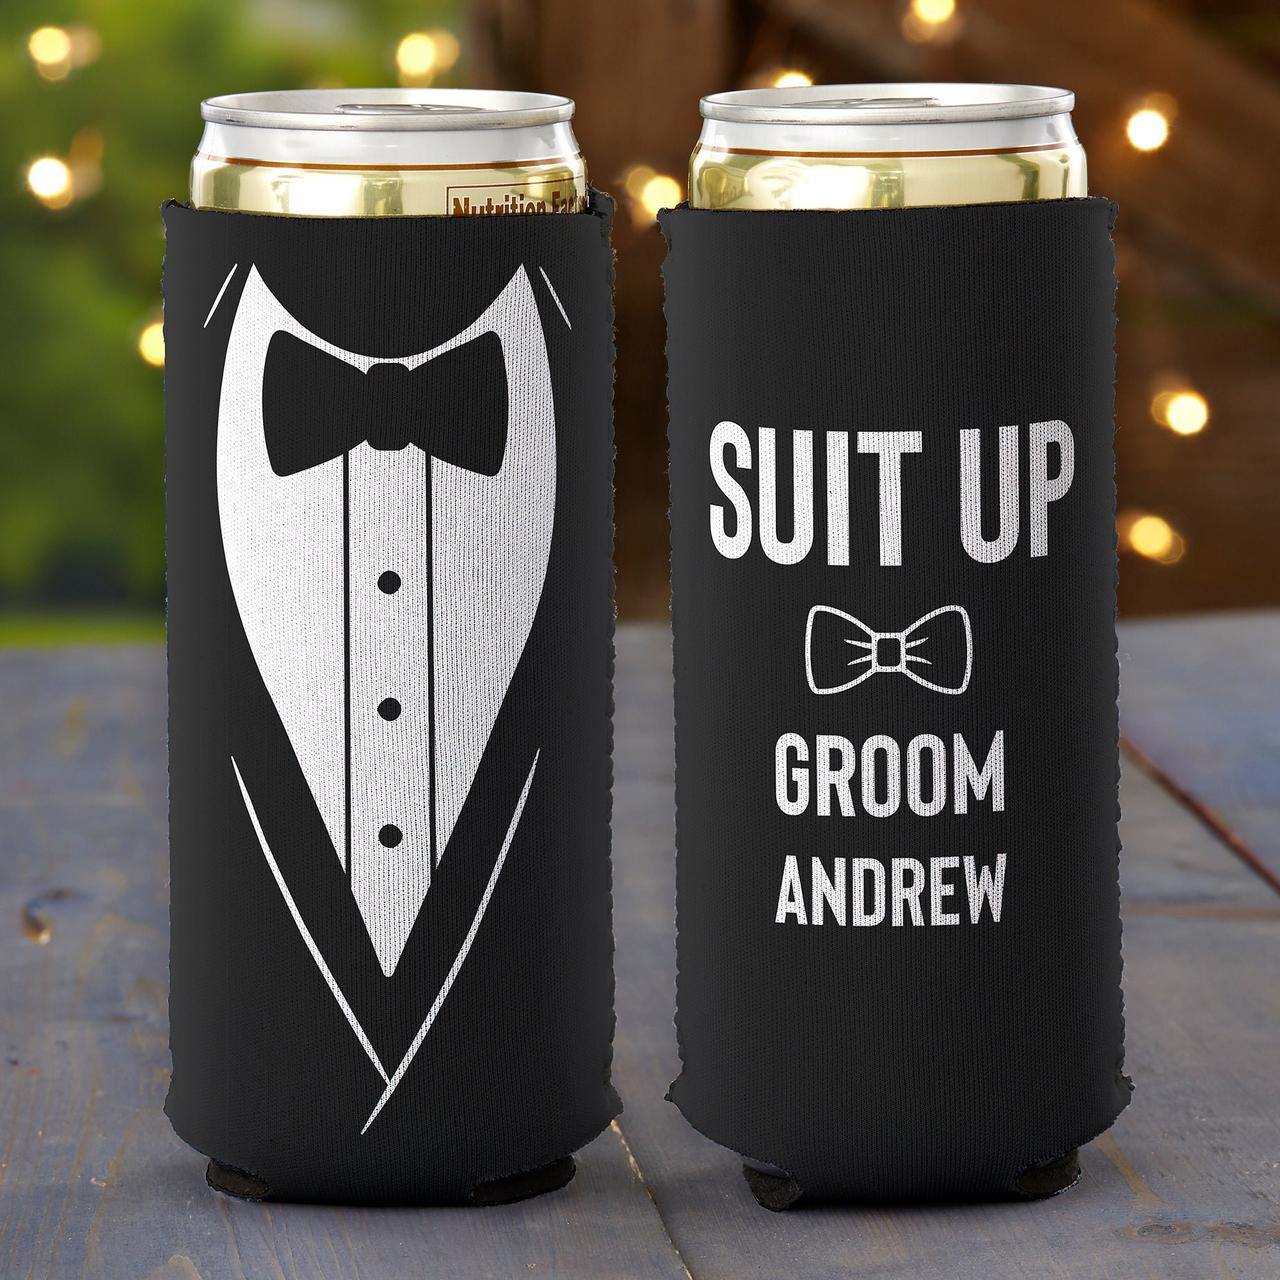 https://cdn0.weddingwire.com/article/9197/original/1280/jpg/17919-15-groomsmen-gift-ideas.jpeg